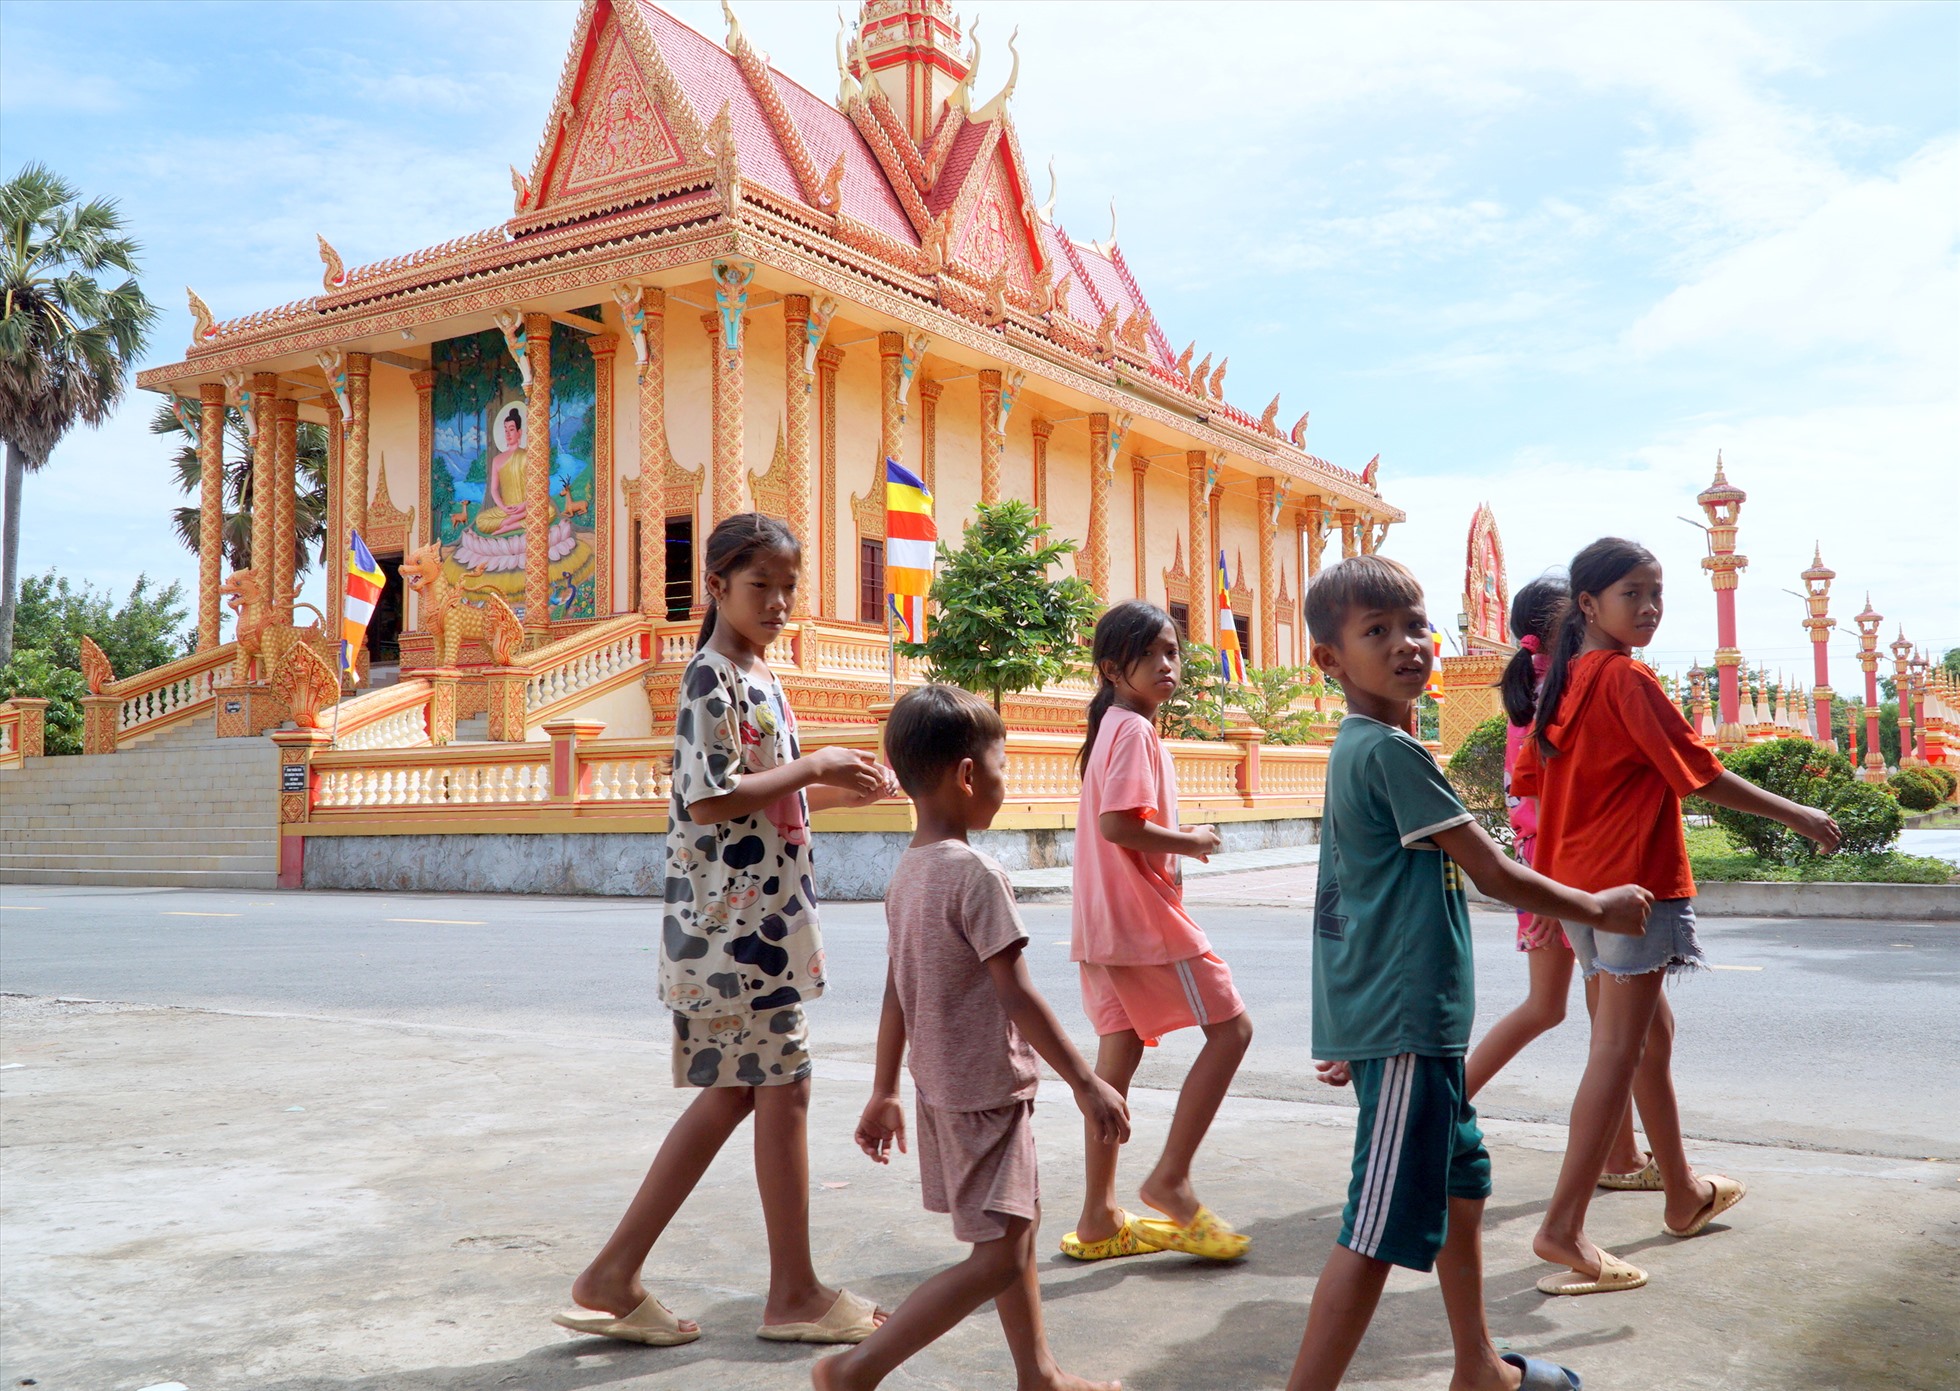 Ngoài việc thờ tự theo tín ngưỡng, Chùa Xiêm Cán còn là nơi sinh hoạt cộng đồng của đồng bào dân tộc Khmer trong vùng.